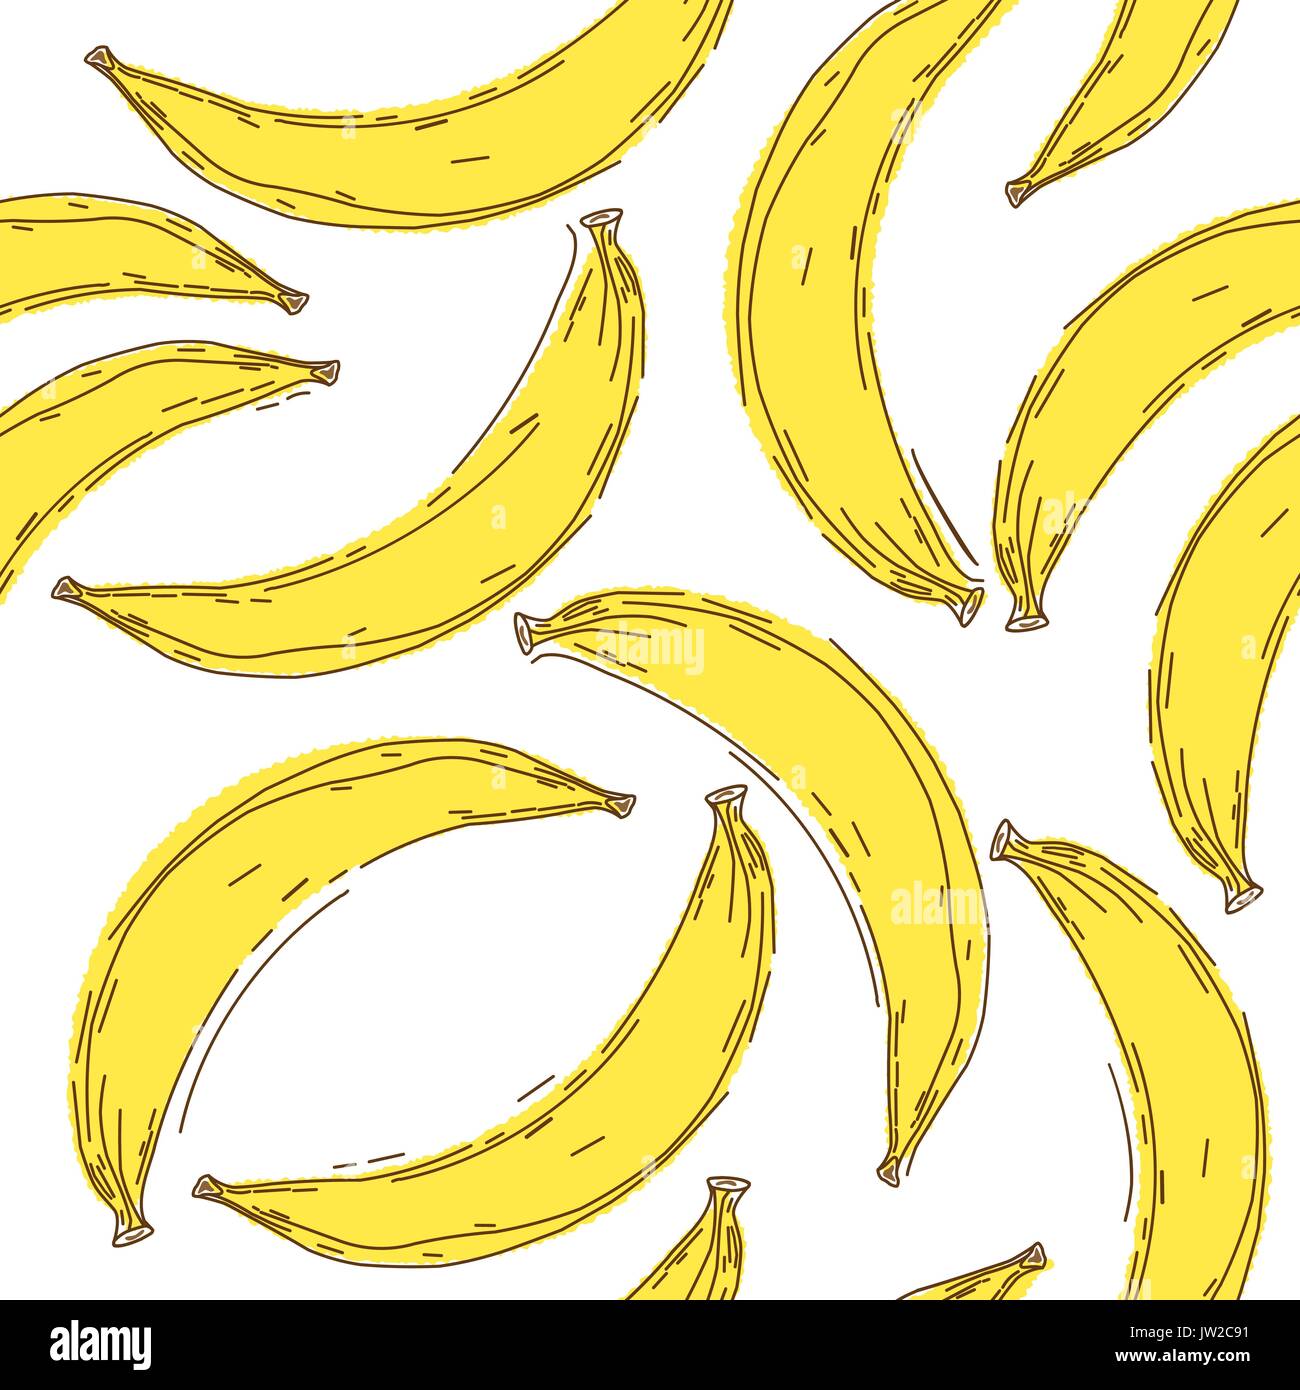 Banane nahtlose Muster. Endlose gelbe Bananen auf Weiß zurück Stock Vektor